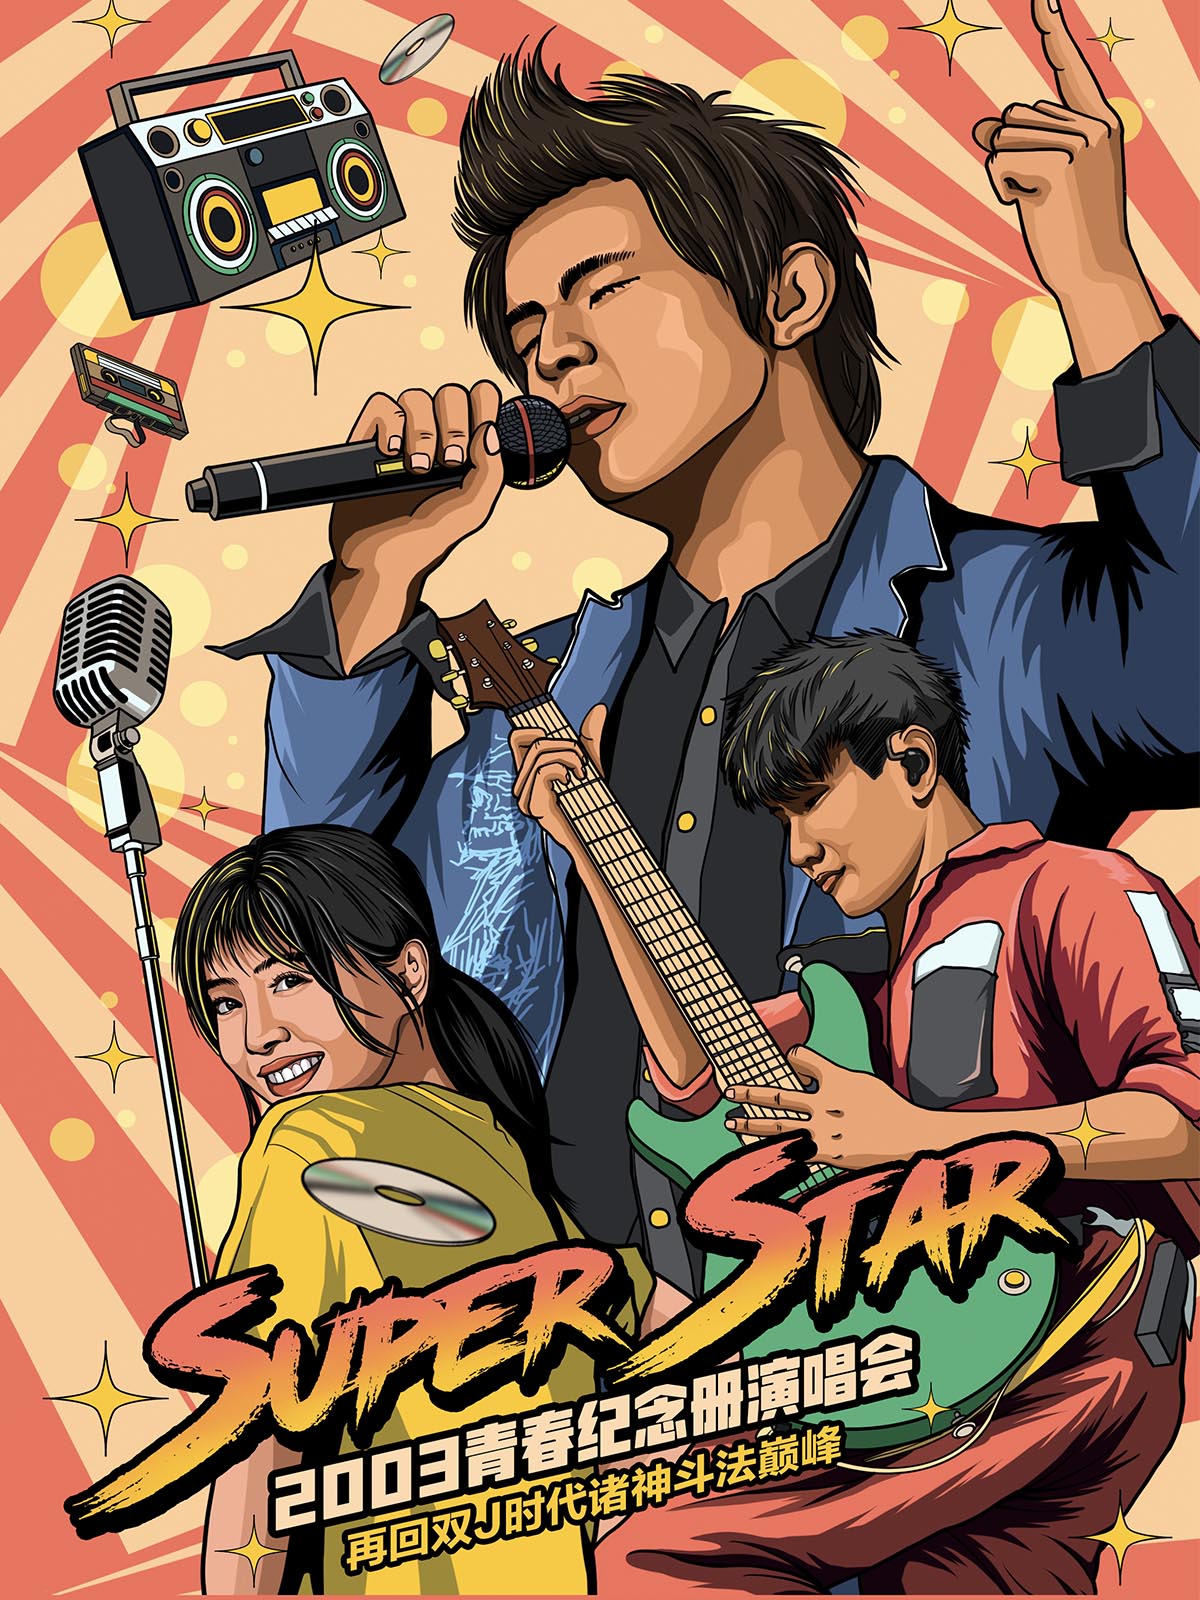 【北京】Super Star 2003青春纪念册演唱会—再回双J时代诸神斗法巅峰